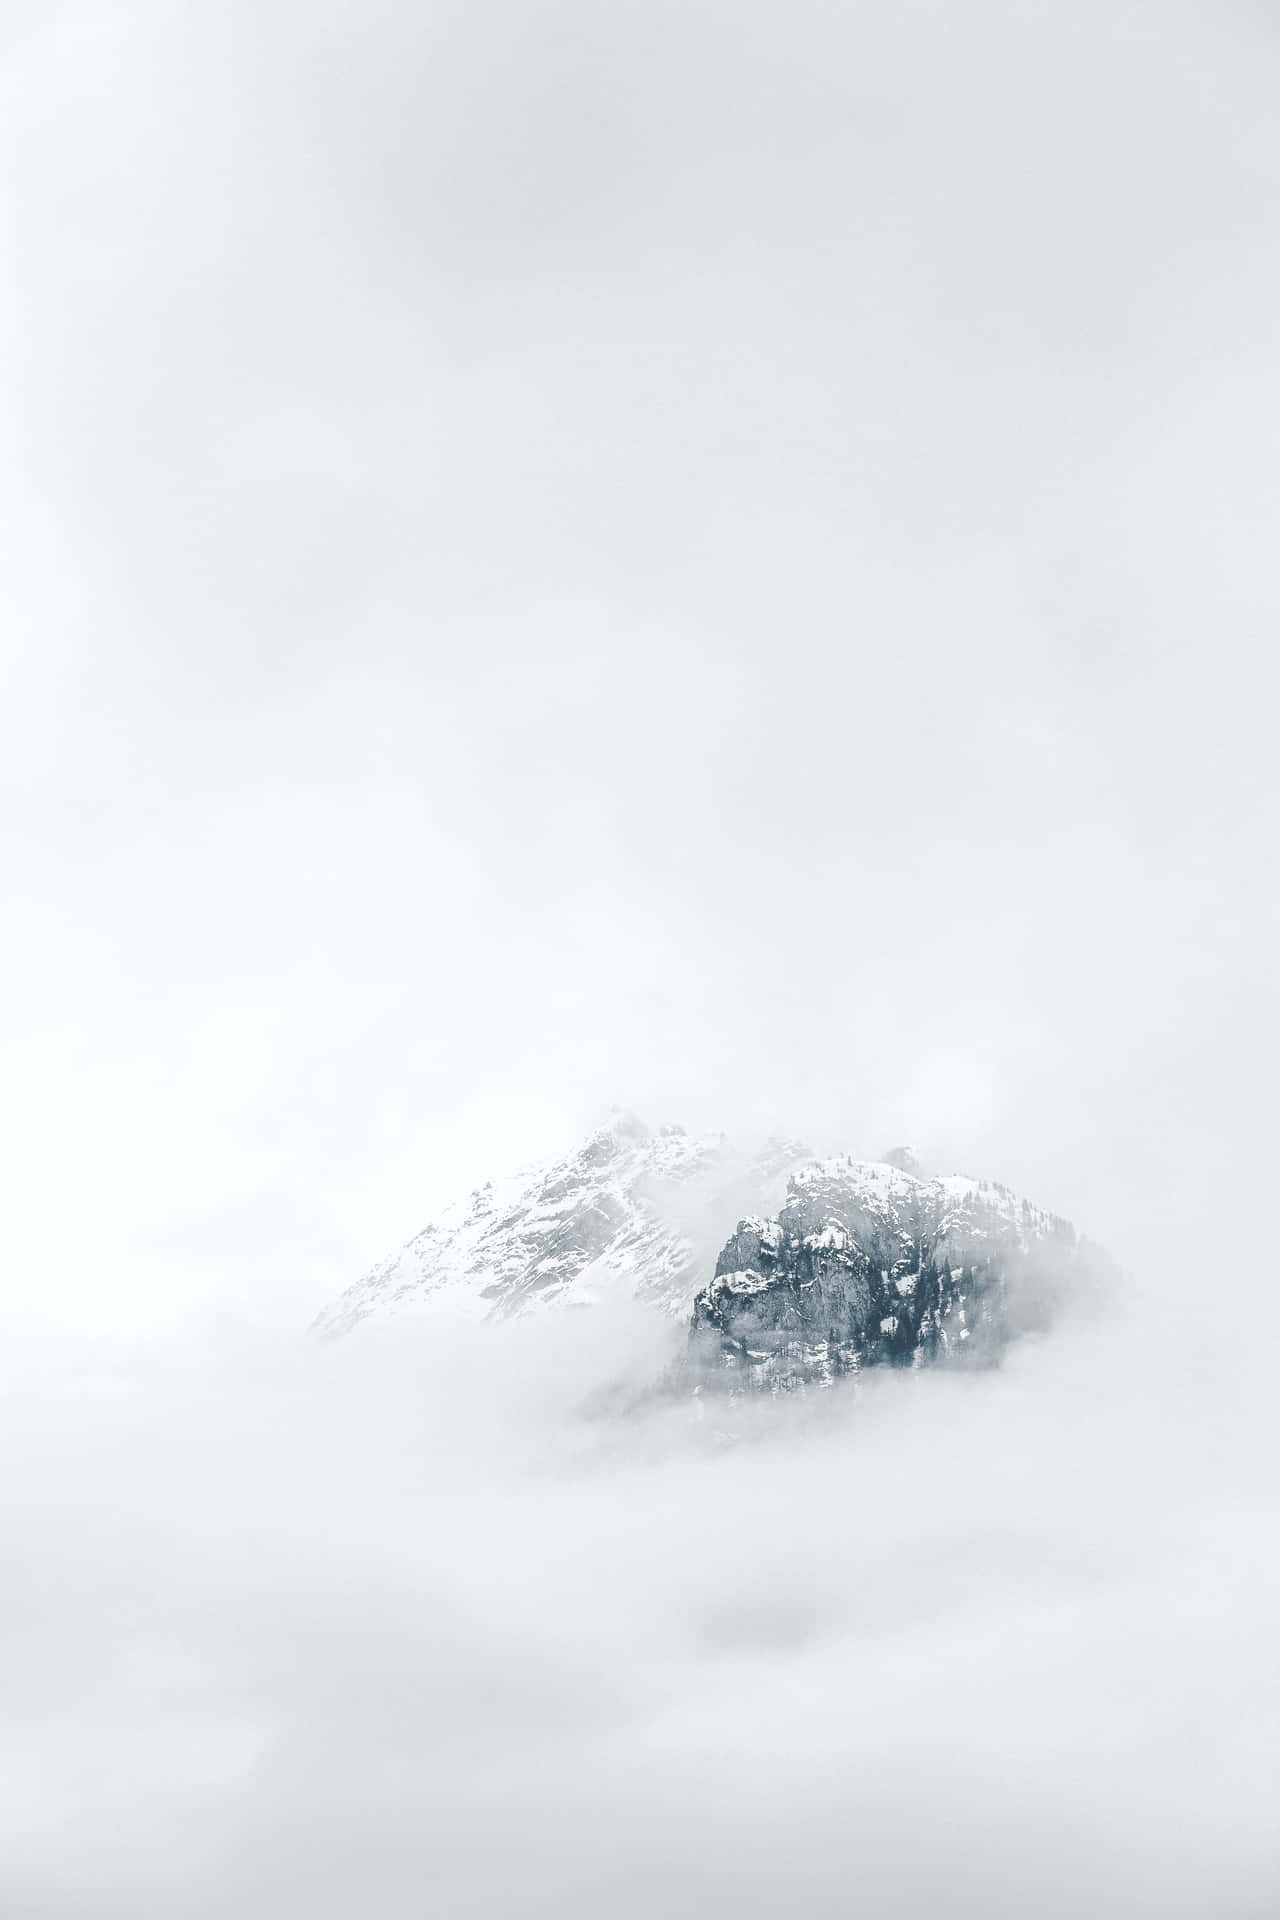 Unamontaña Cubierta De Nubes Con Nieve En La Cima.